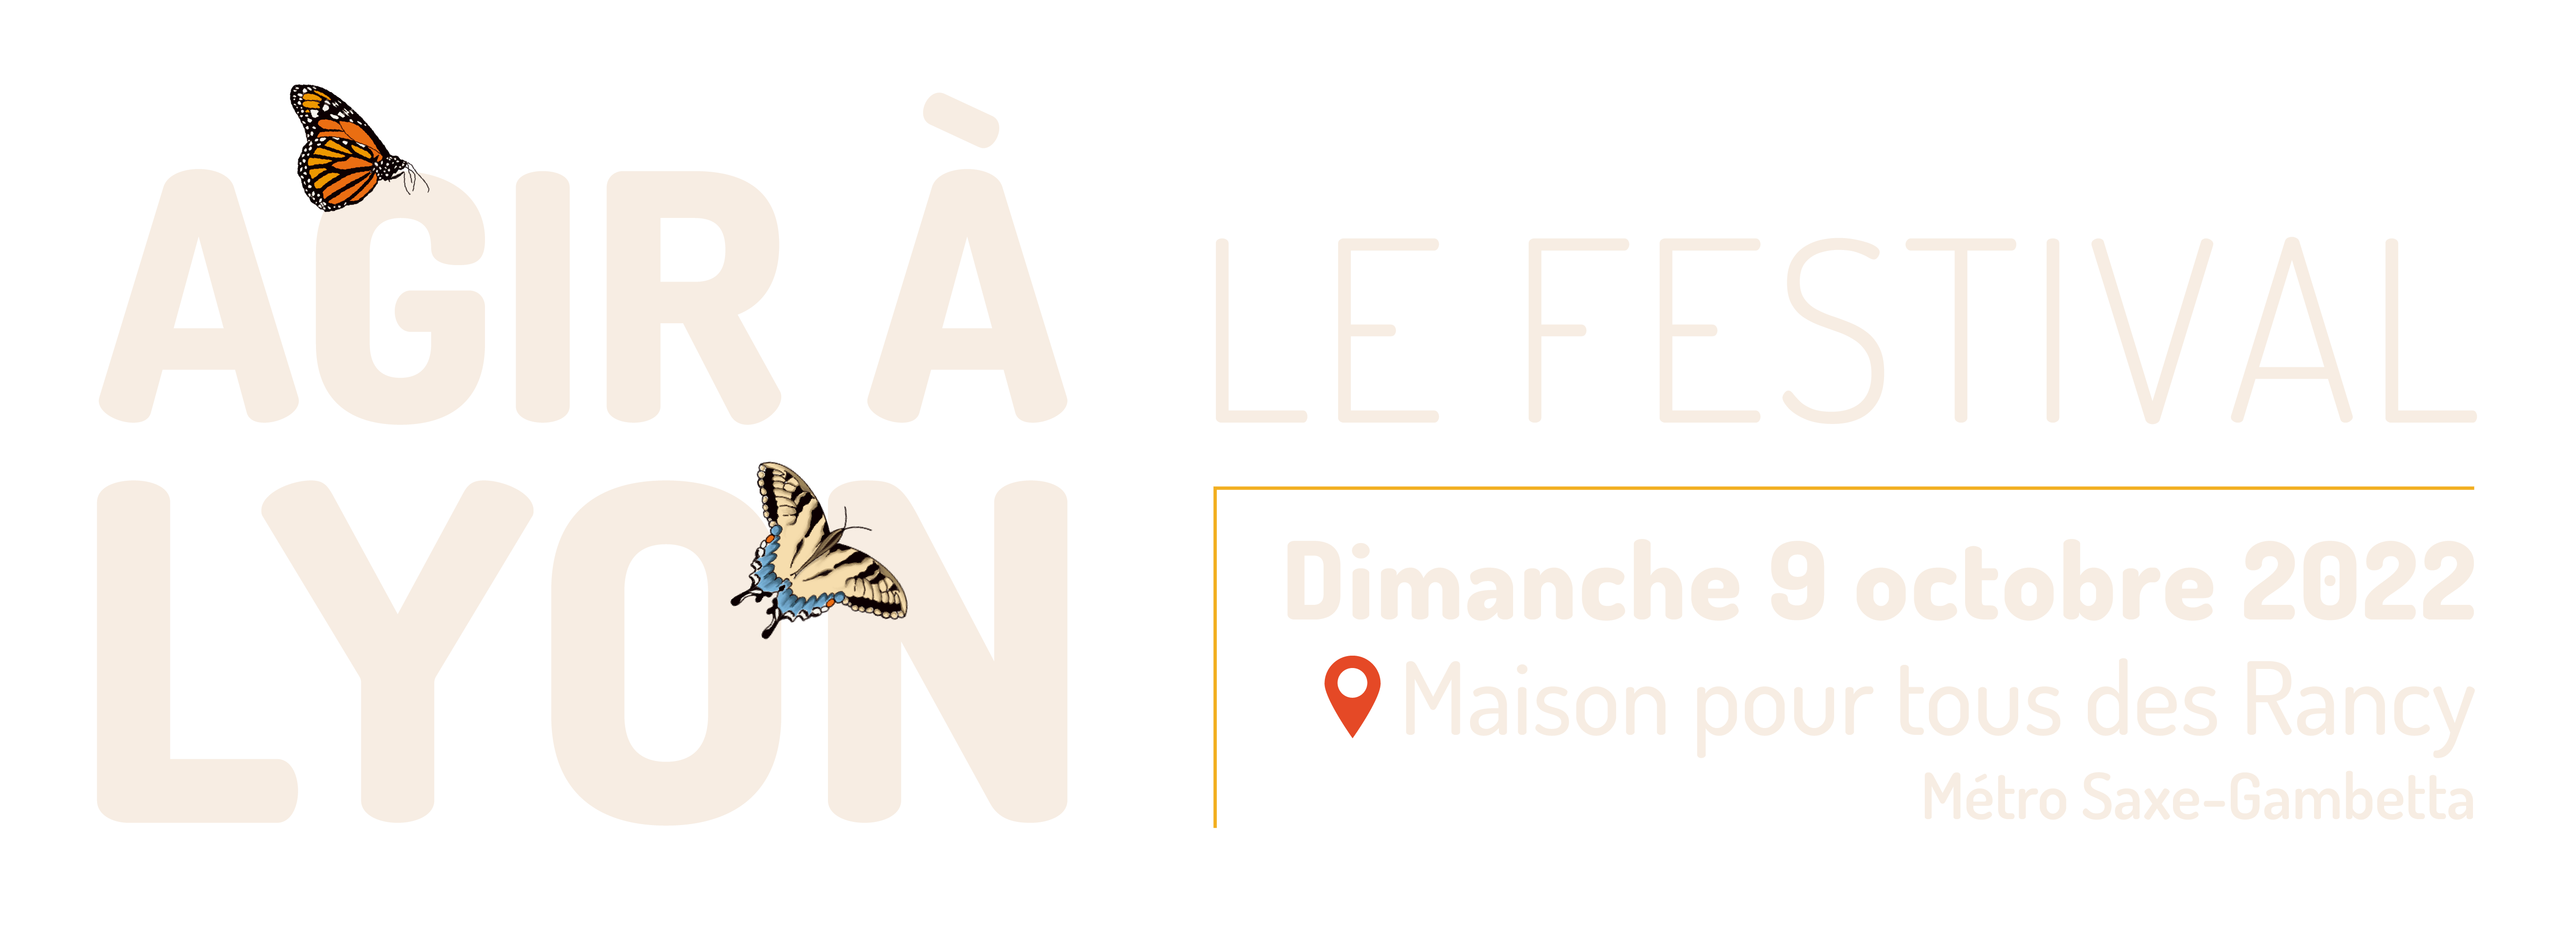 Festival Agir à Lyon, dimanche 9 octobre 2022, Maison pour tous des Rancy, 10h30-18h